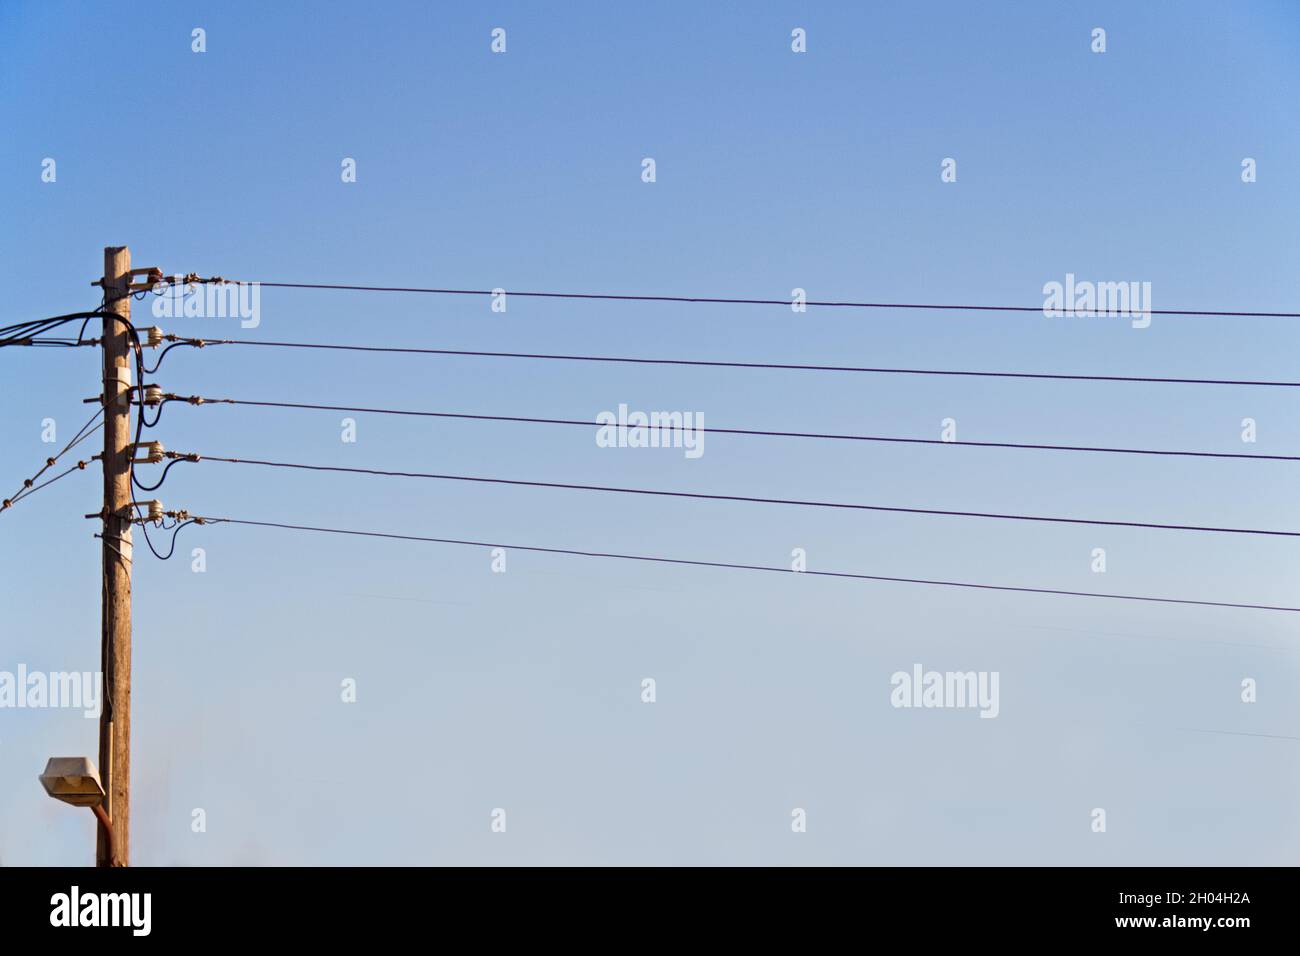 Cinque fili elettrici a forma di uno staff musicale contro un cielo blu chiaro Foto Stock